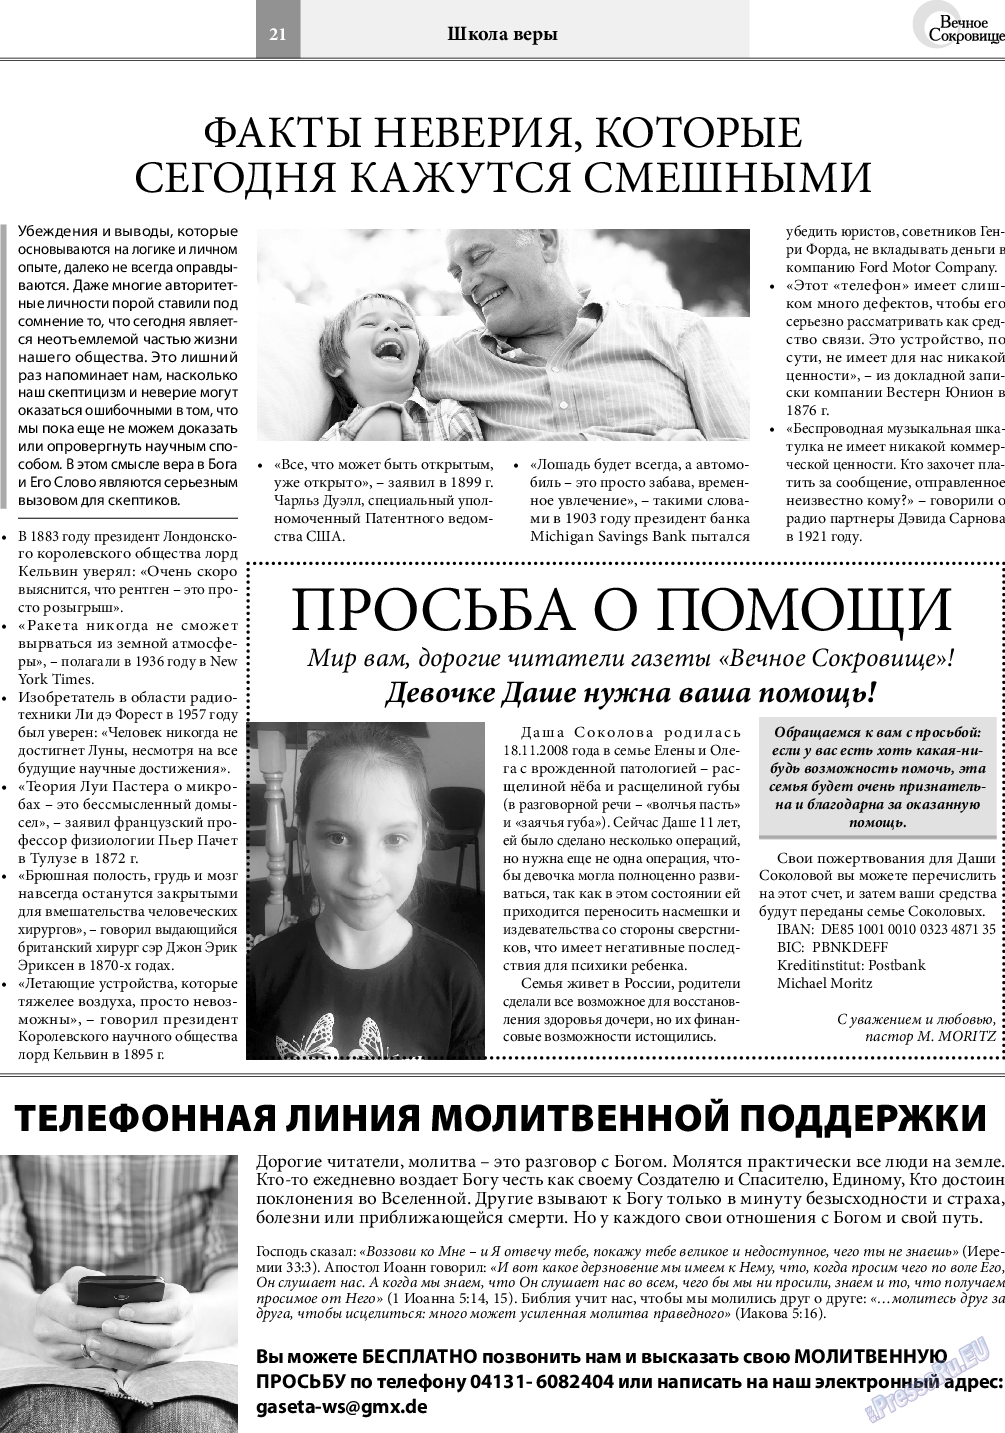 Вечное сокровище, газета. 2020 №2 стр.21